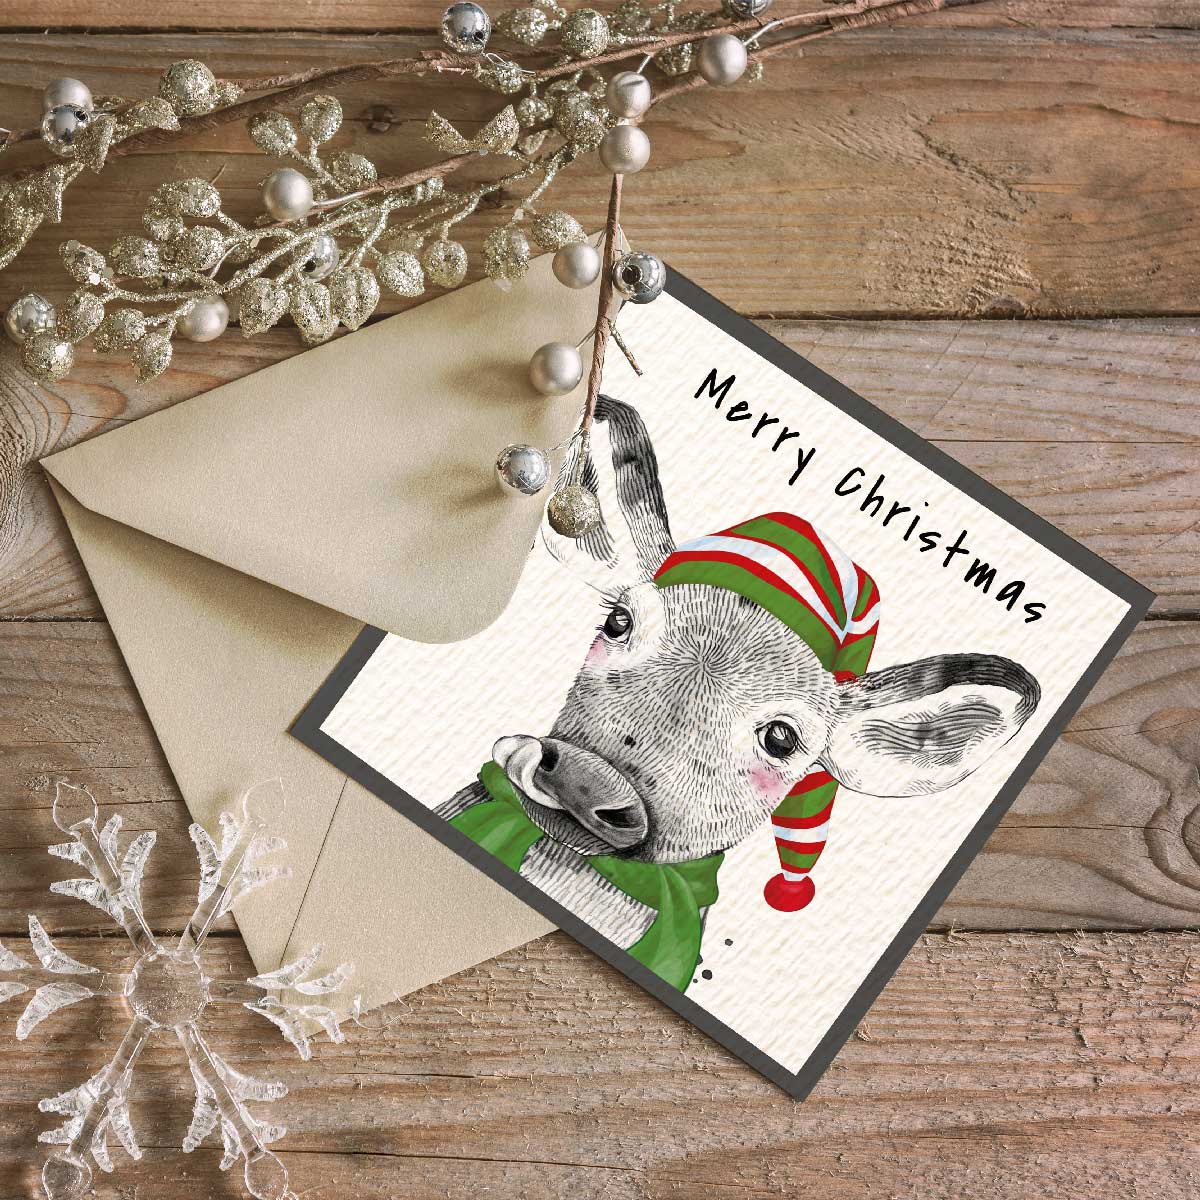 Festive Cow Christmas Card